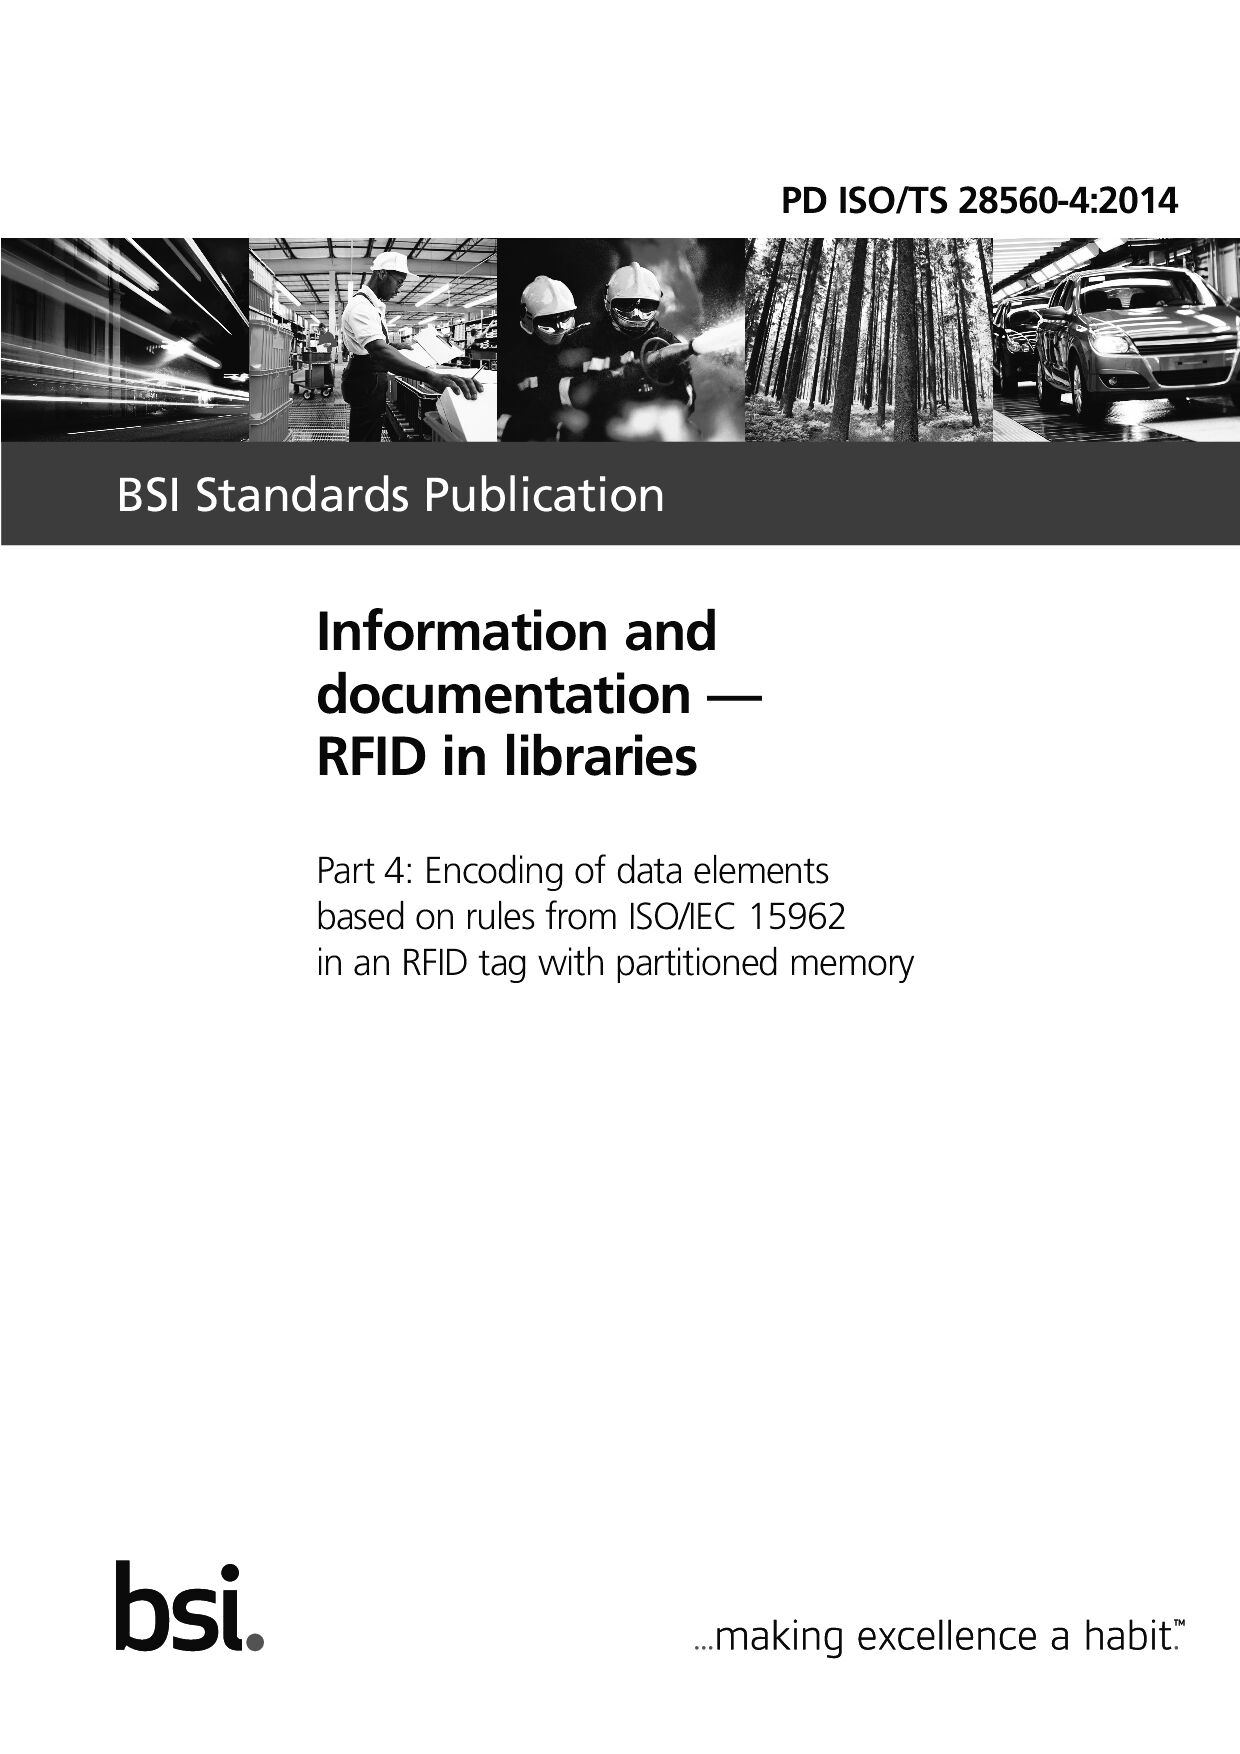 PD ISO/TS 28560-4:2014封面图